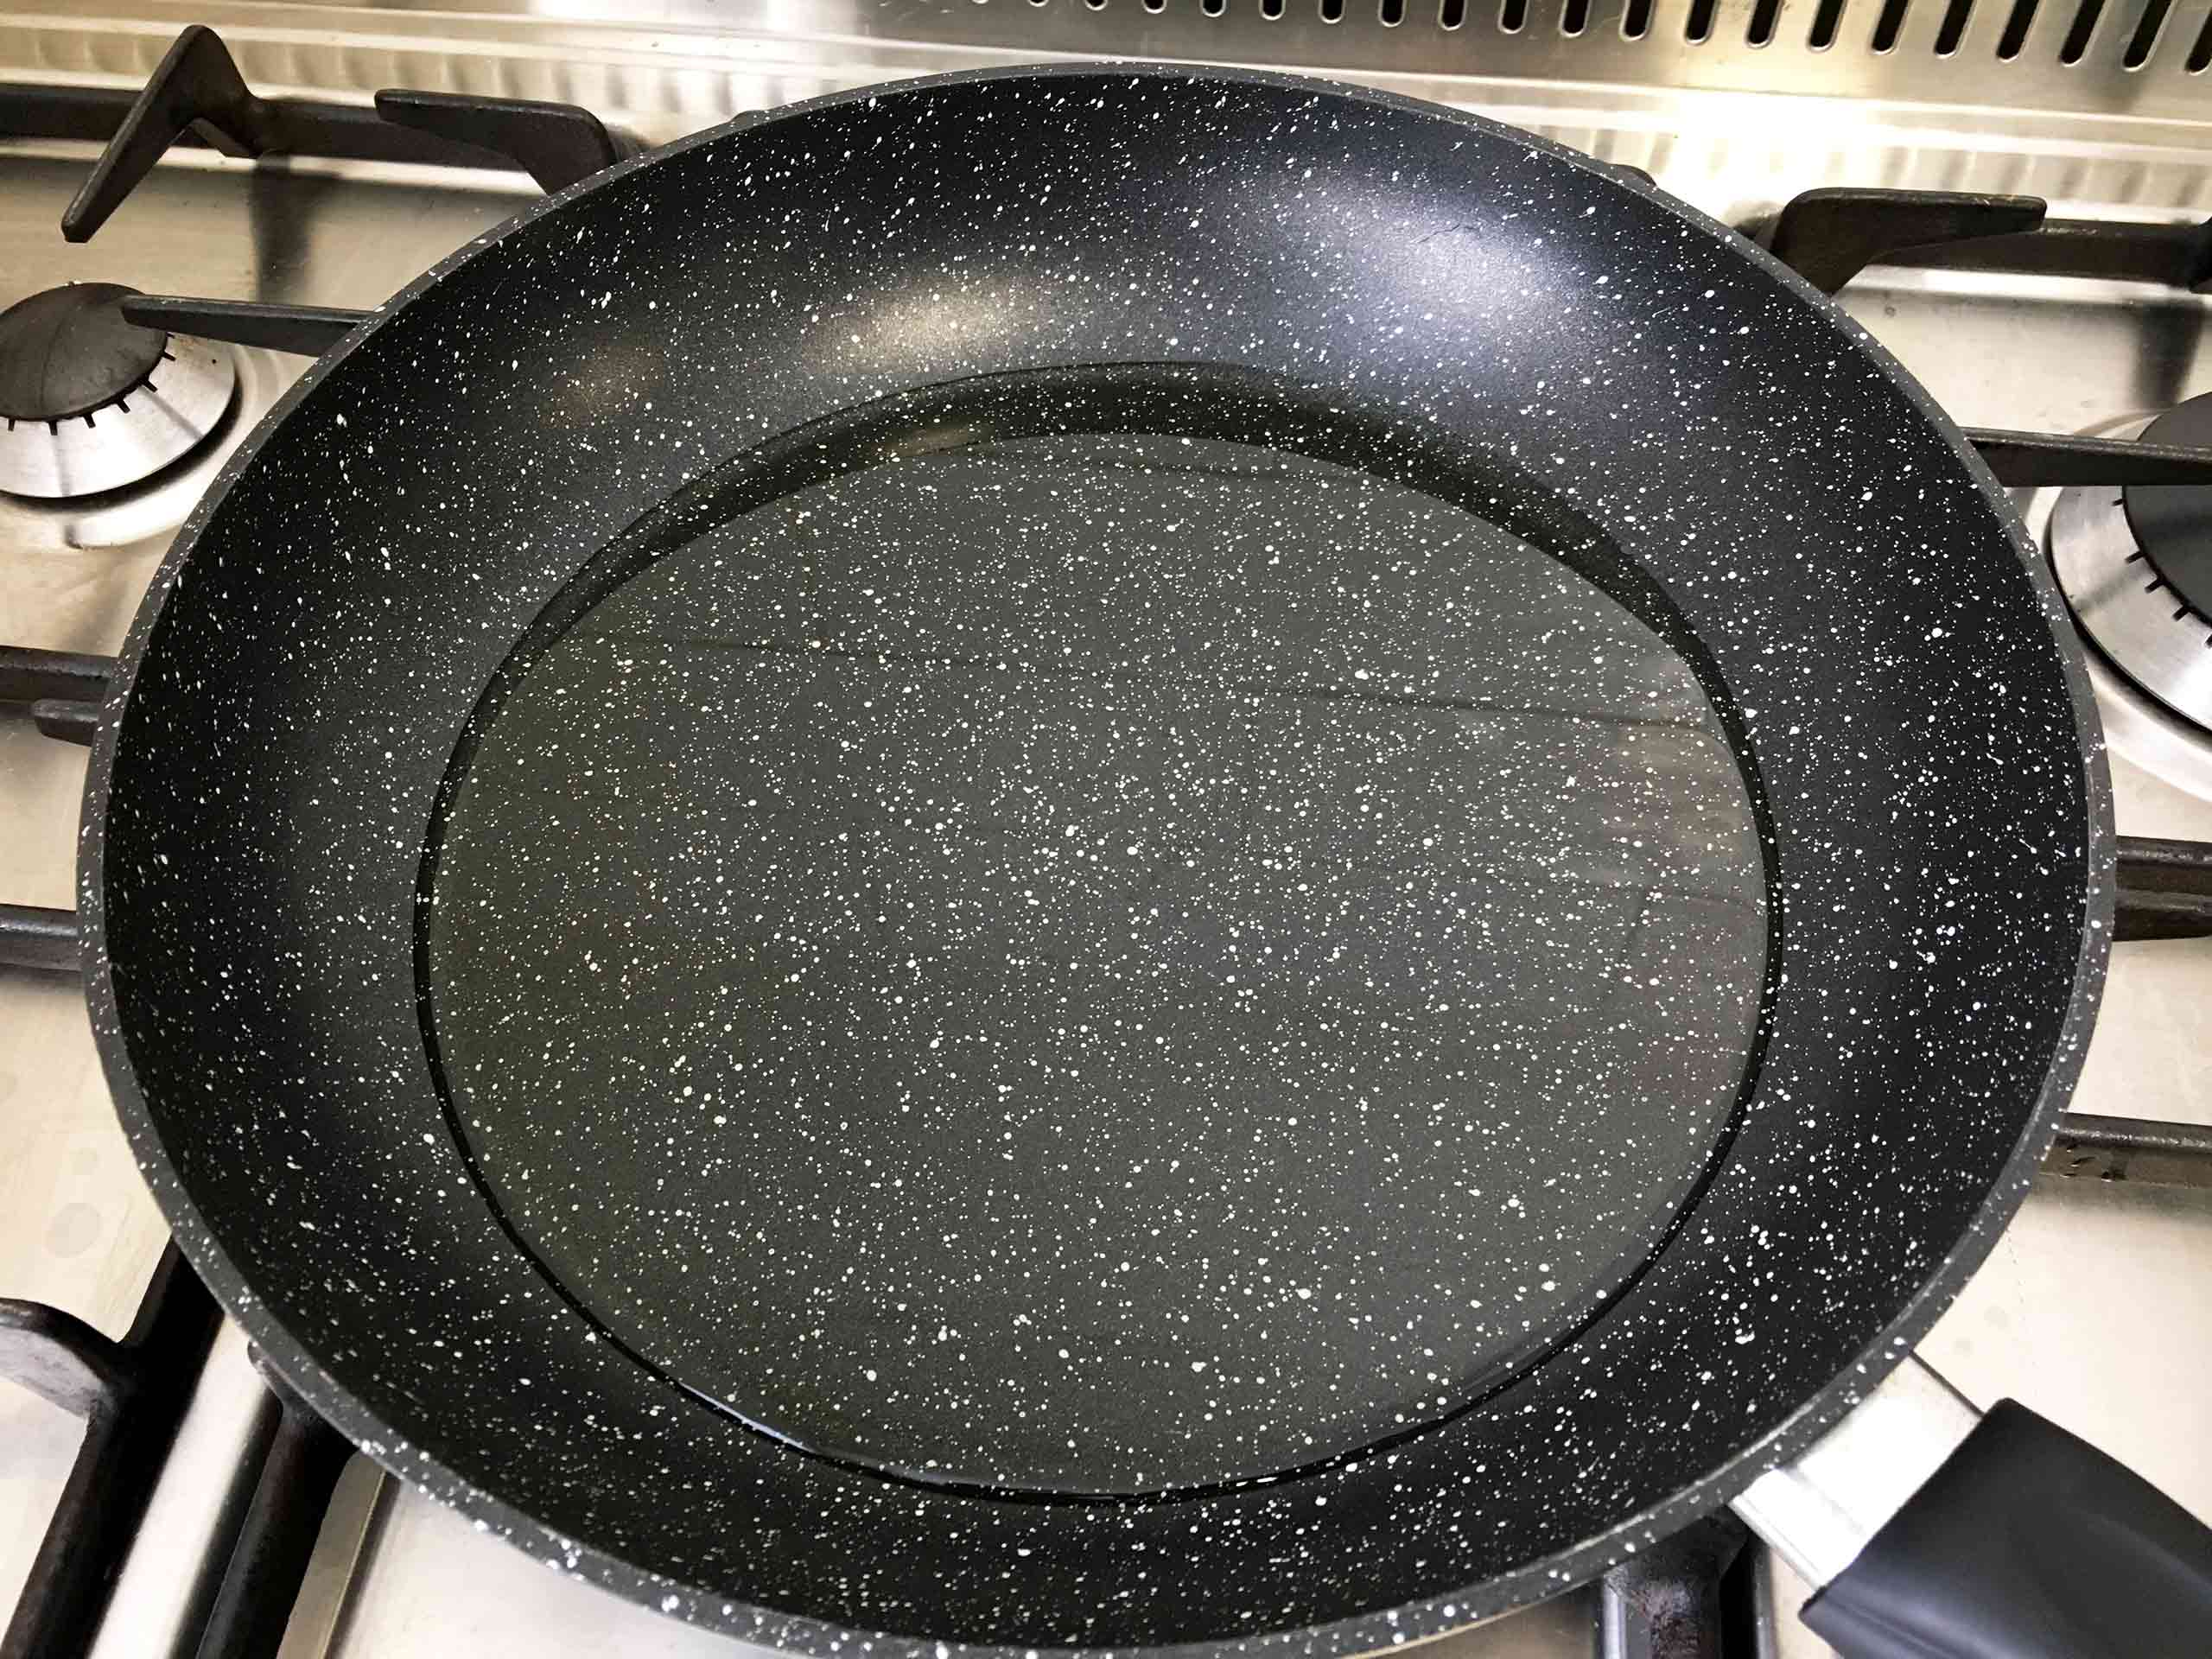 heat oil in frying pan